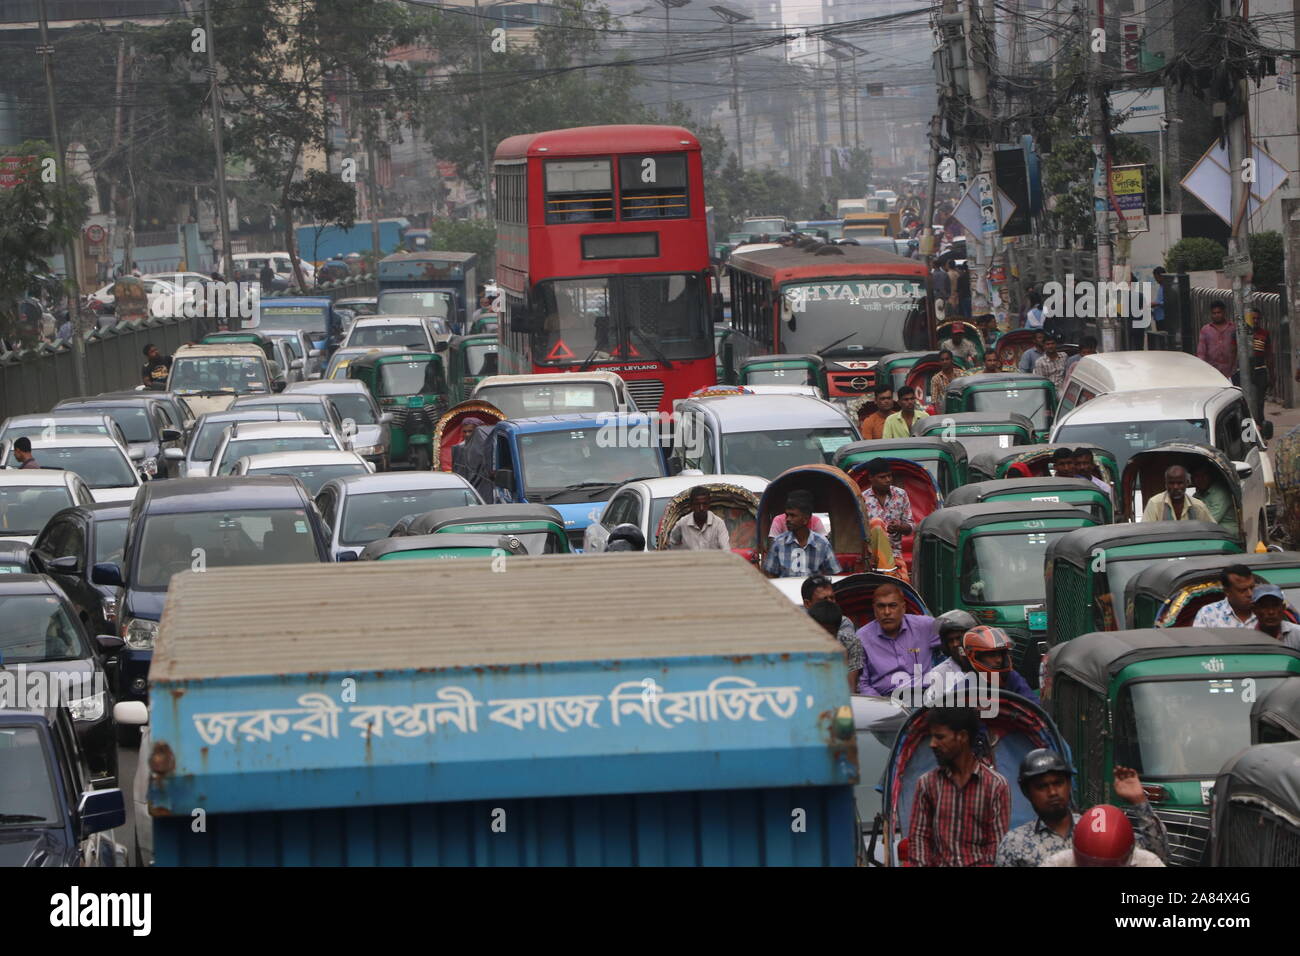 traffic jam 06 nov2019, traffic jam in dhaka bangladeshpurana nayapaltan© Nazmul Islam/alamay live news Stock Photo